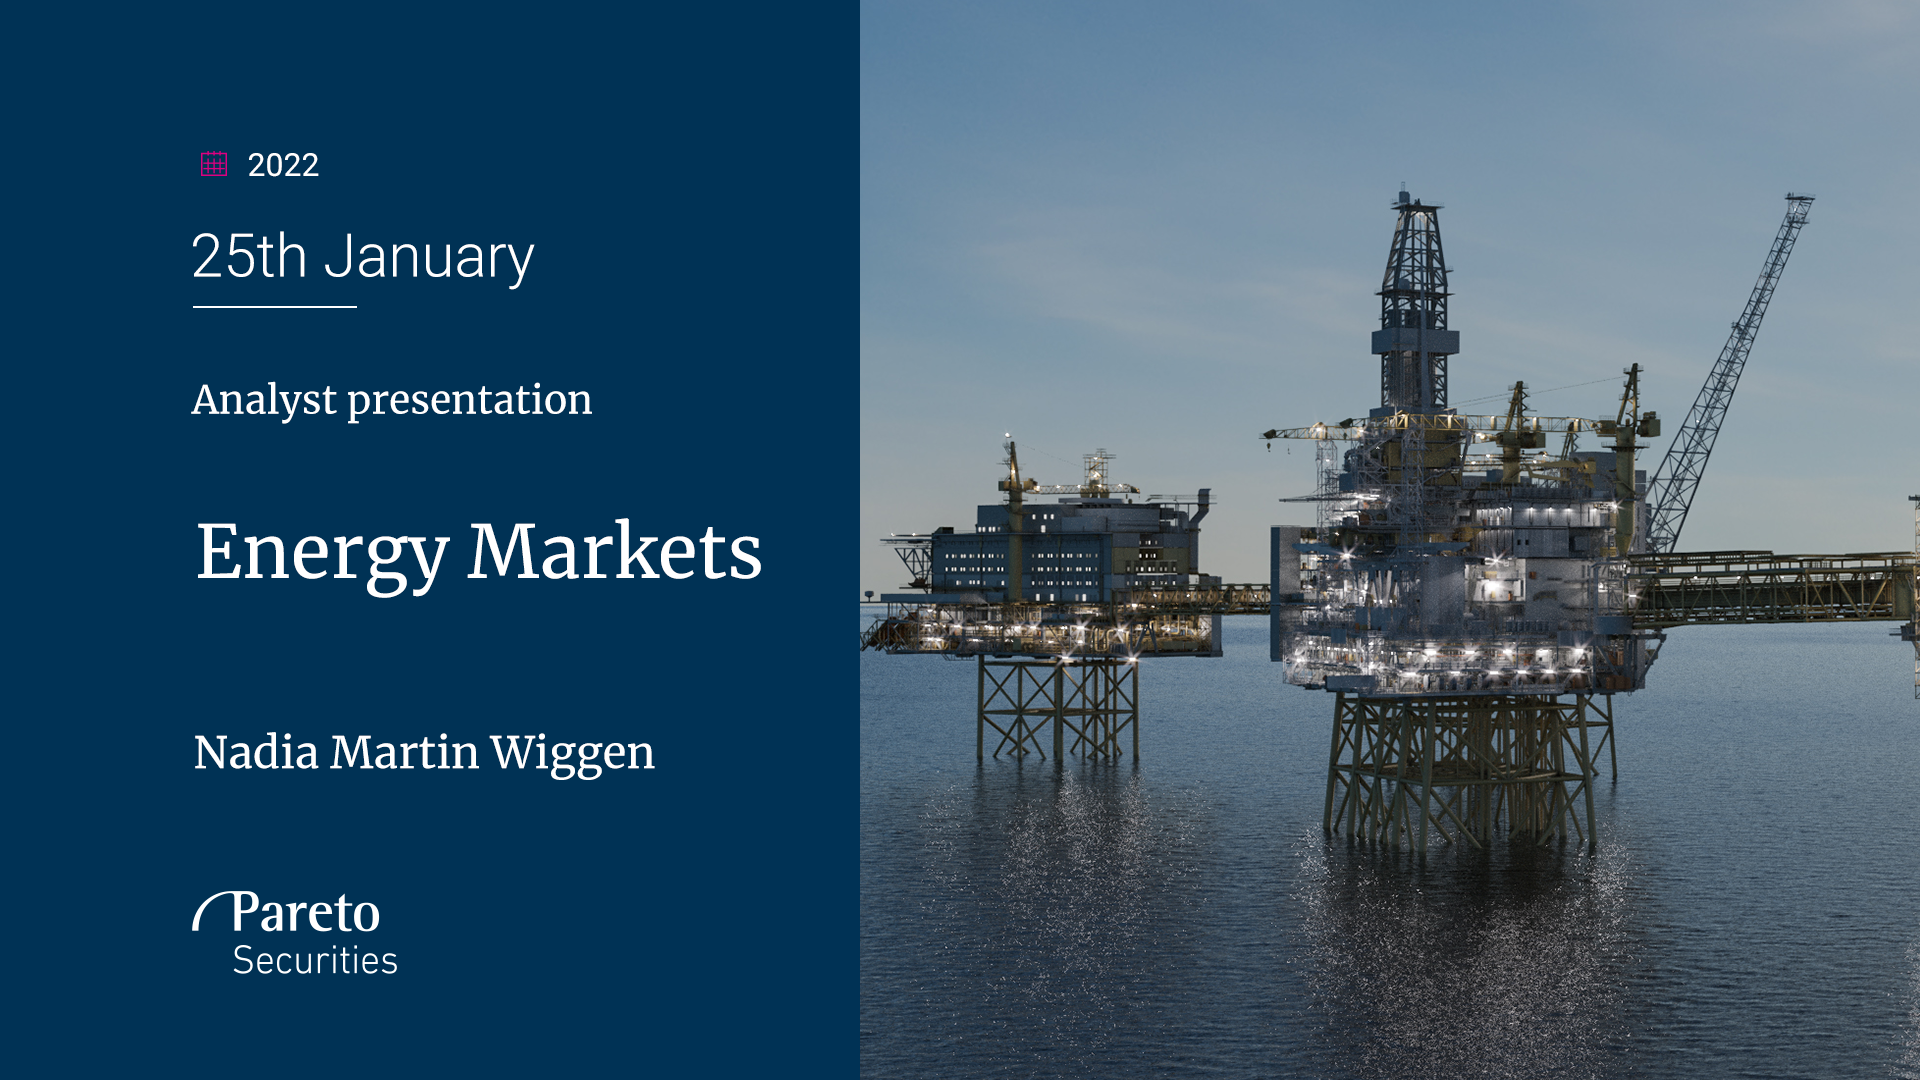 Olje er den nye oljen: Analytikerpresentasjon om energimarkedet